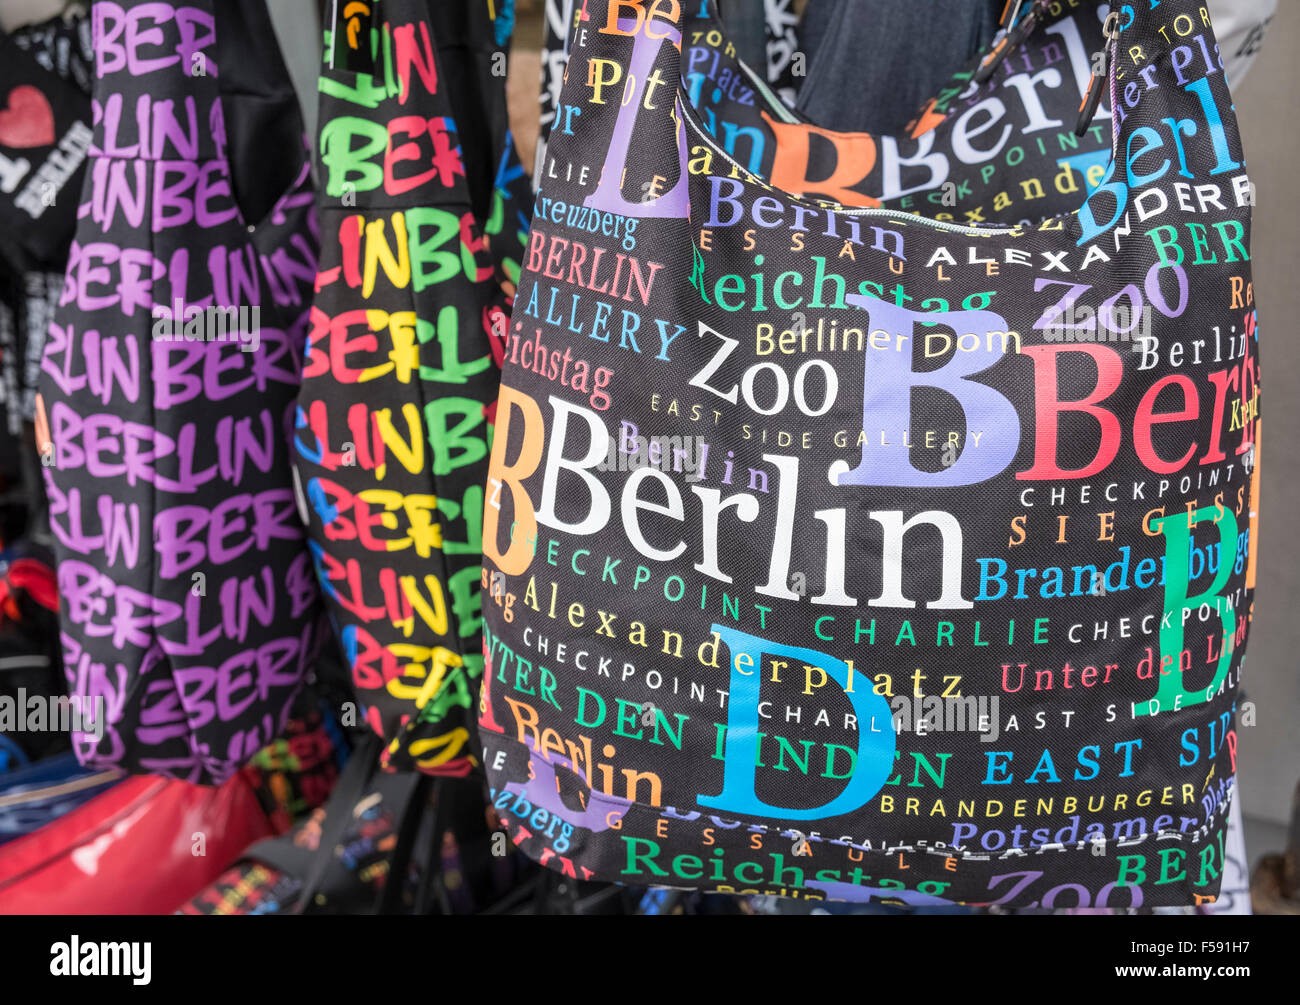 Tourist Souvenir Bags für Verkauf, Hervorhebung der Attraktionen und Sehenswürdigkeiten in Berlin, Deutschland Stockfoto